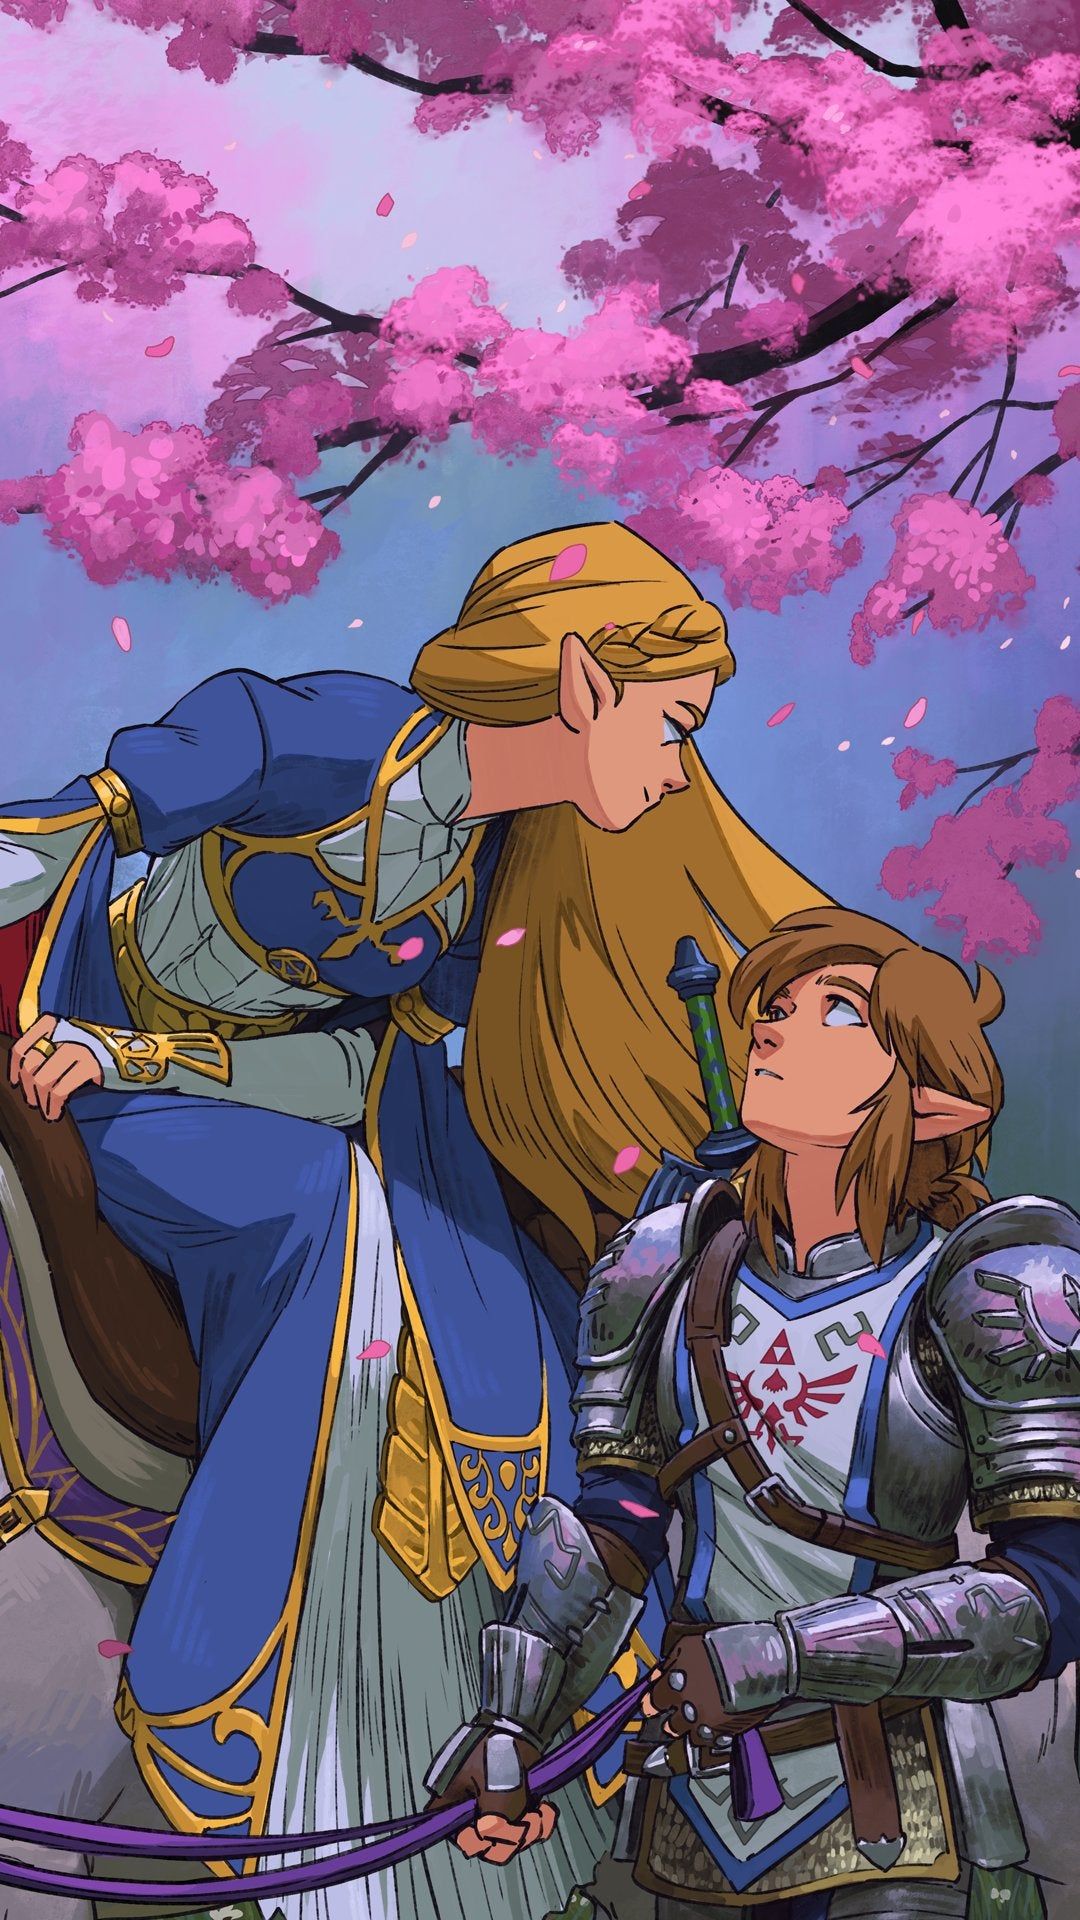 Legend of Zelda Breath of the Wild sequel inspired art  Link  botw 2 HD  phone wallpaper  Pxfuel